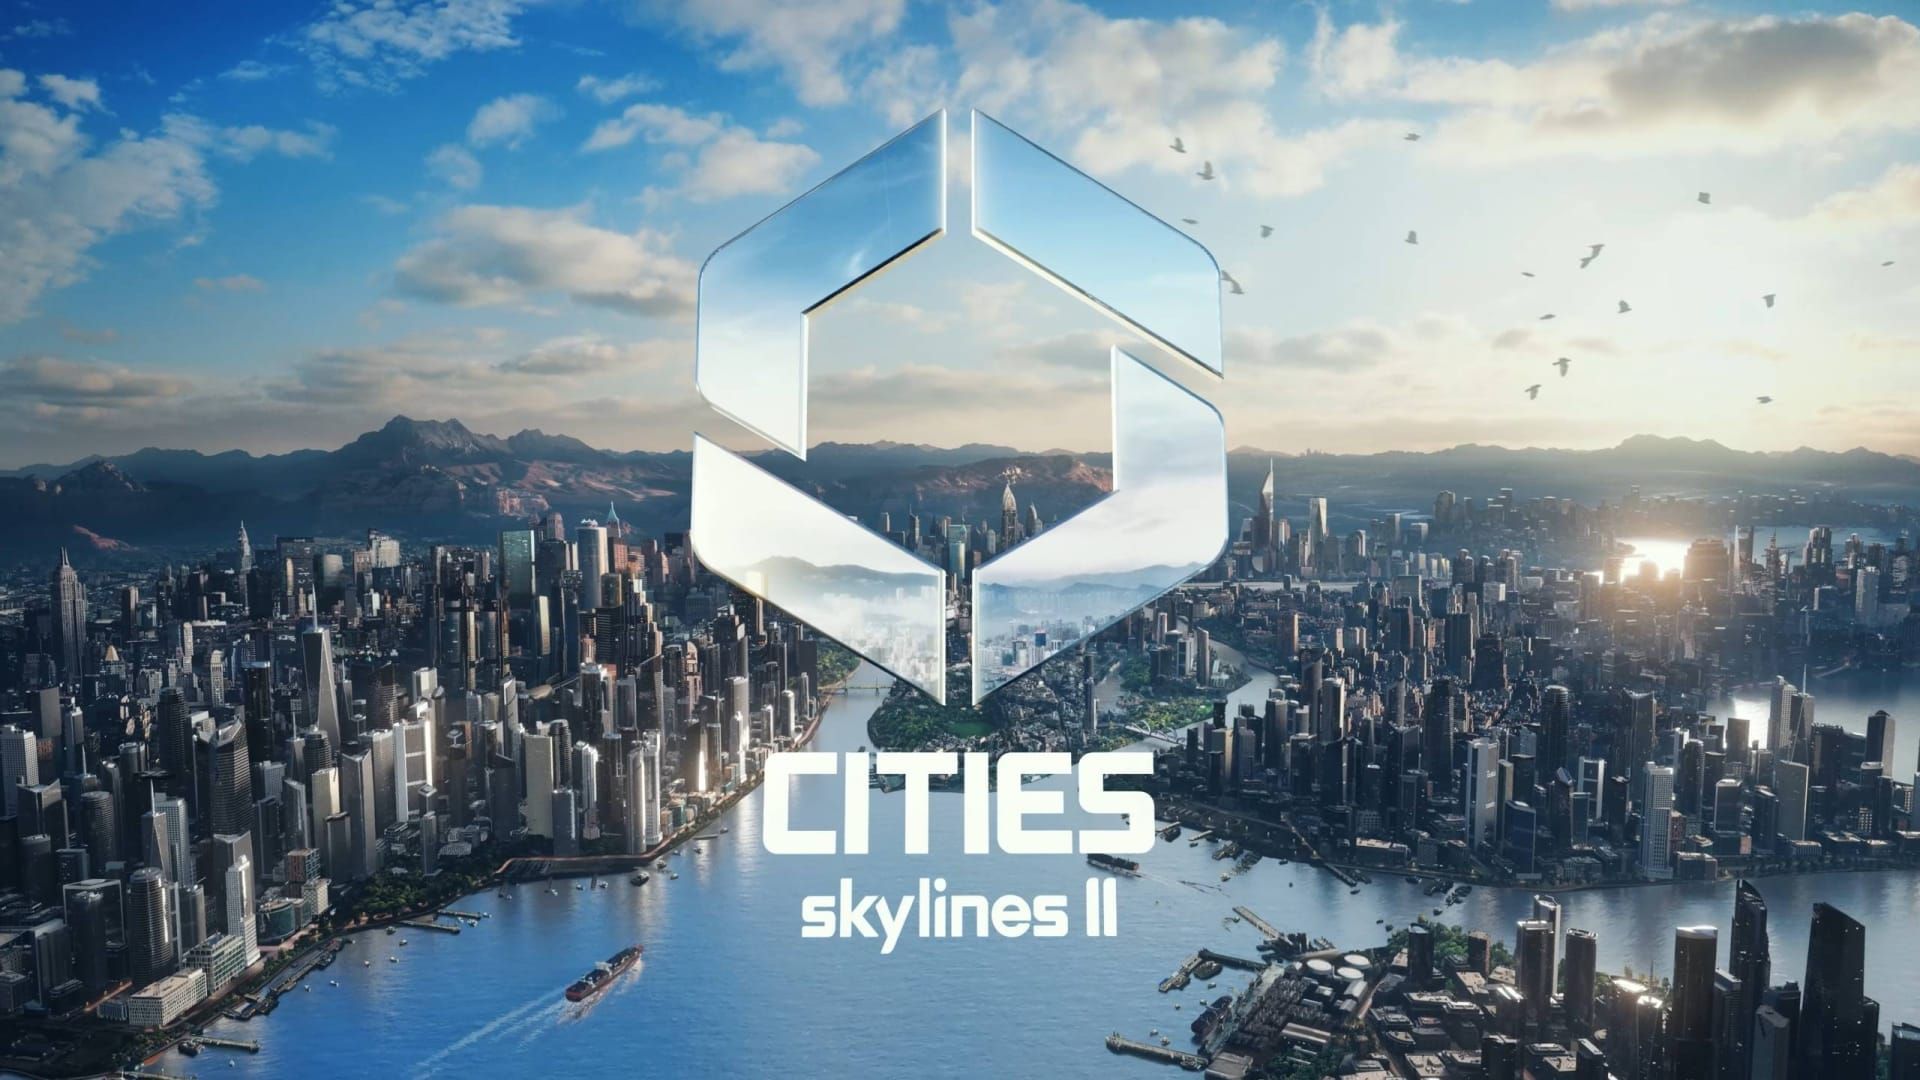 Cities: Skylines II vil snart legge til åtte pakker med regionale bygningstemaer utviklet av moddere.